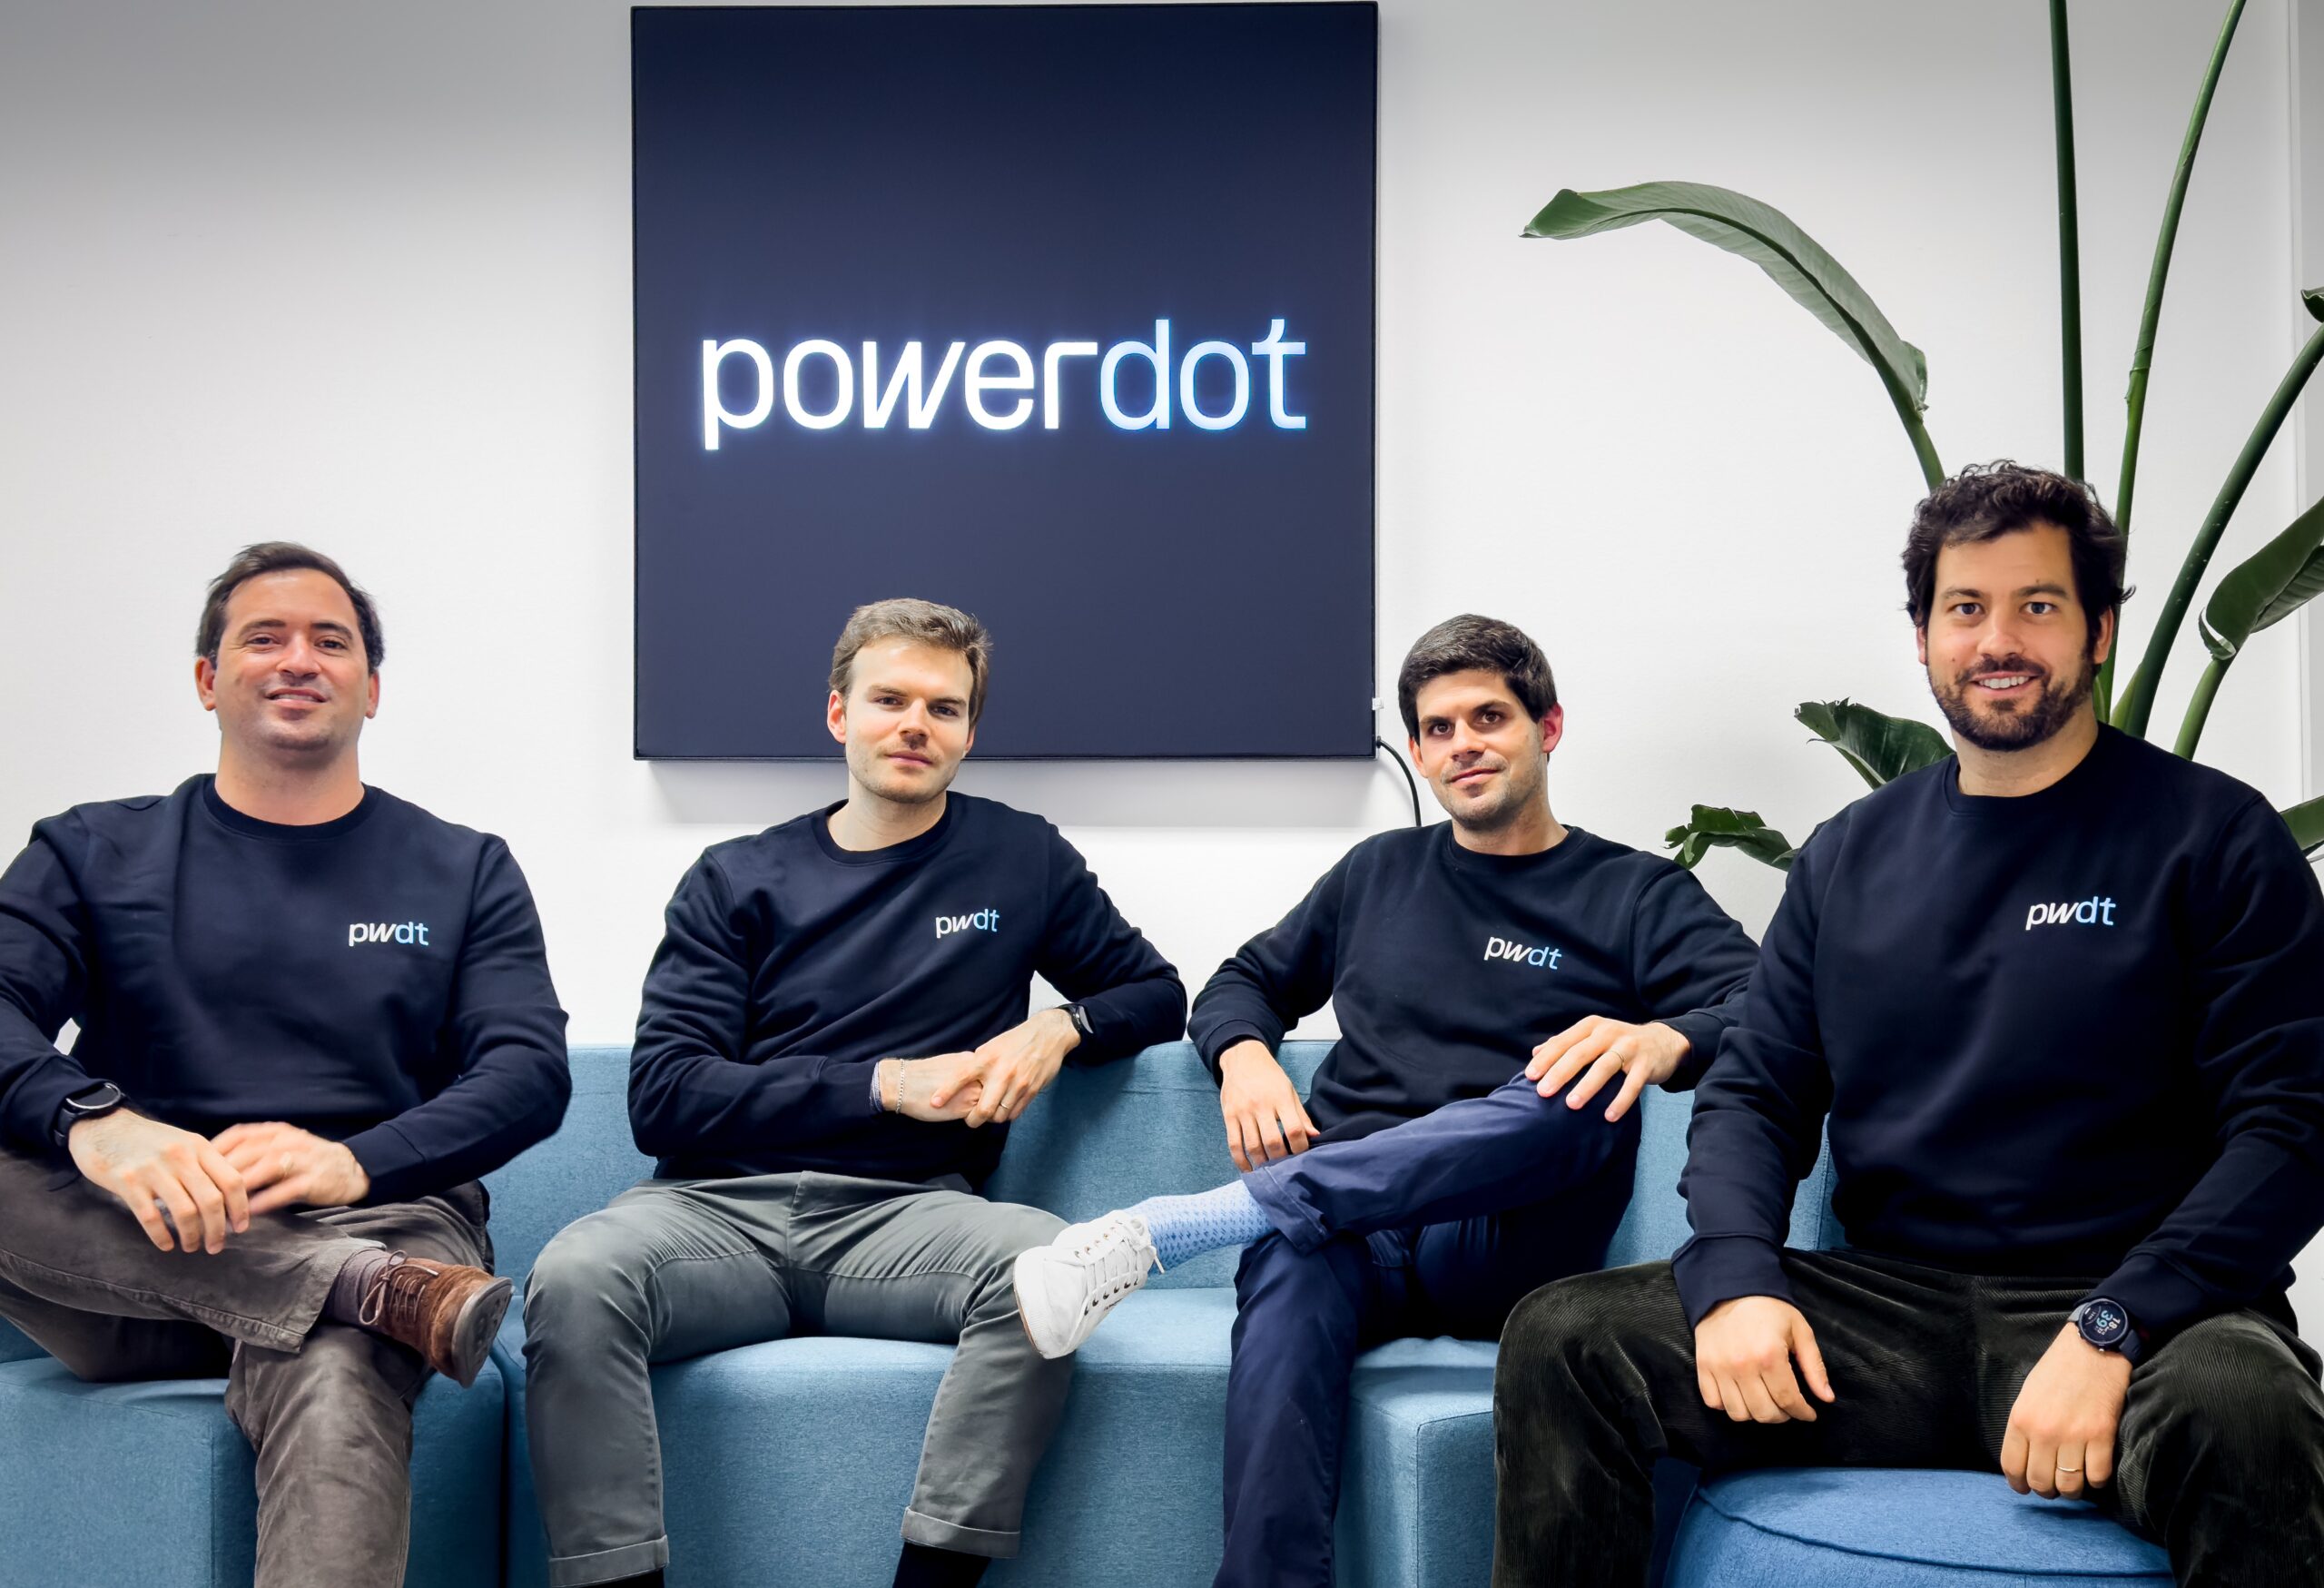 Powerdot capta 100 milhões de euros em financiamento para consolidar-se como um dos principais players da mobilidade elétrica